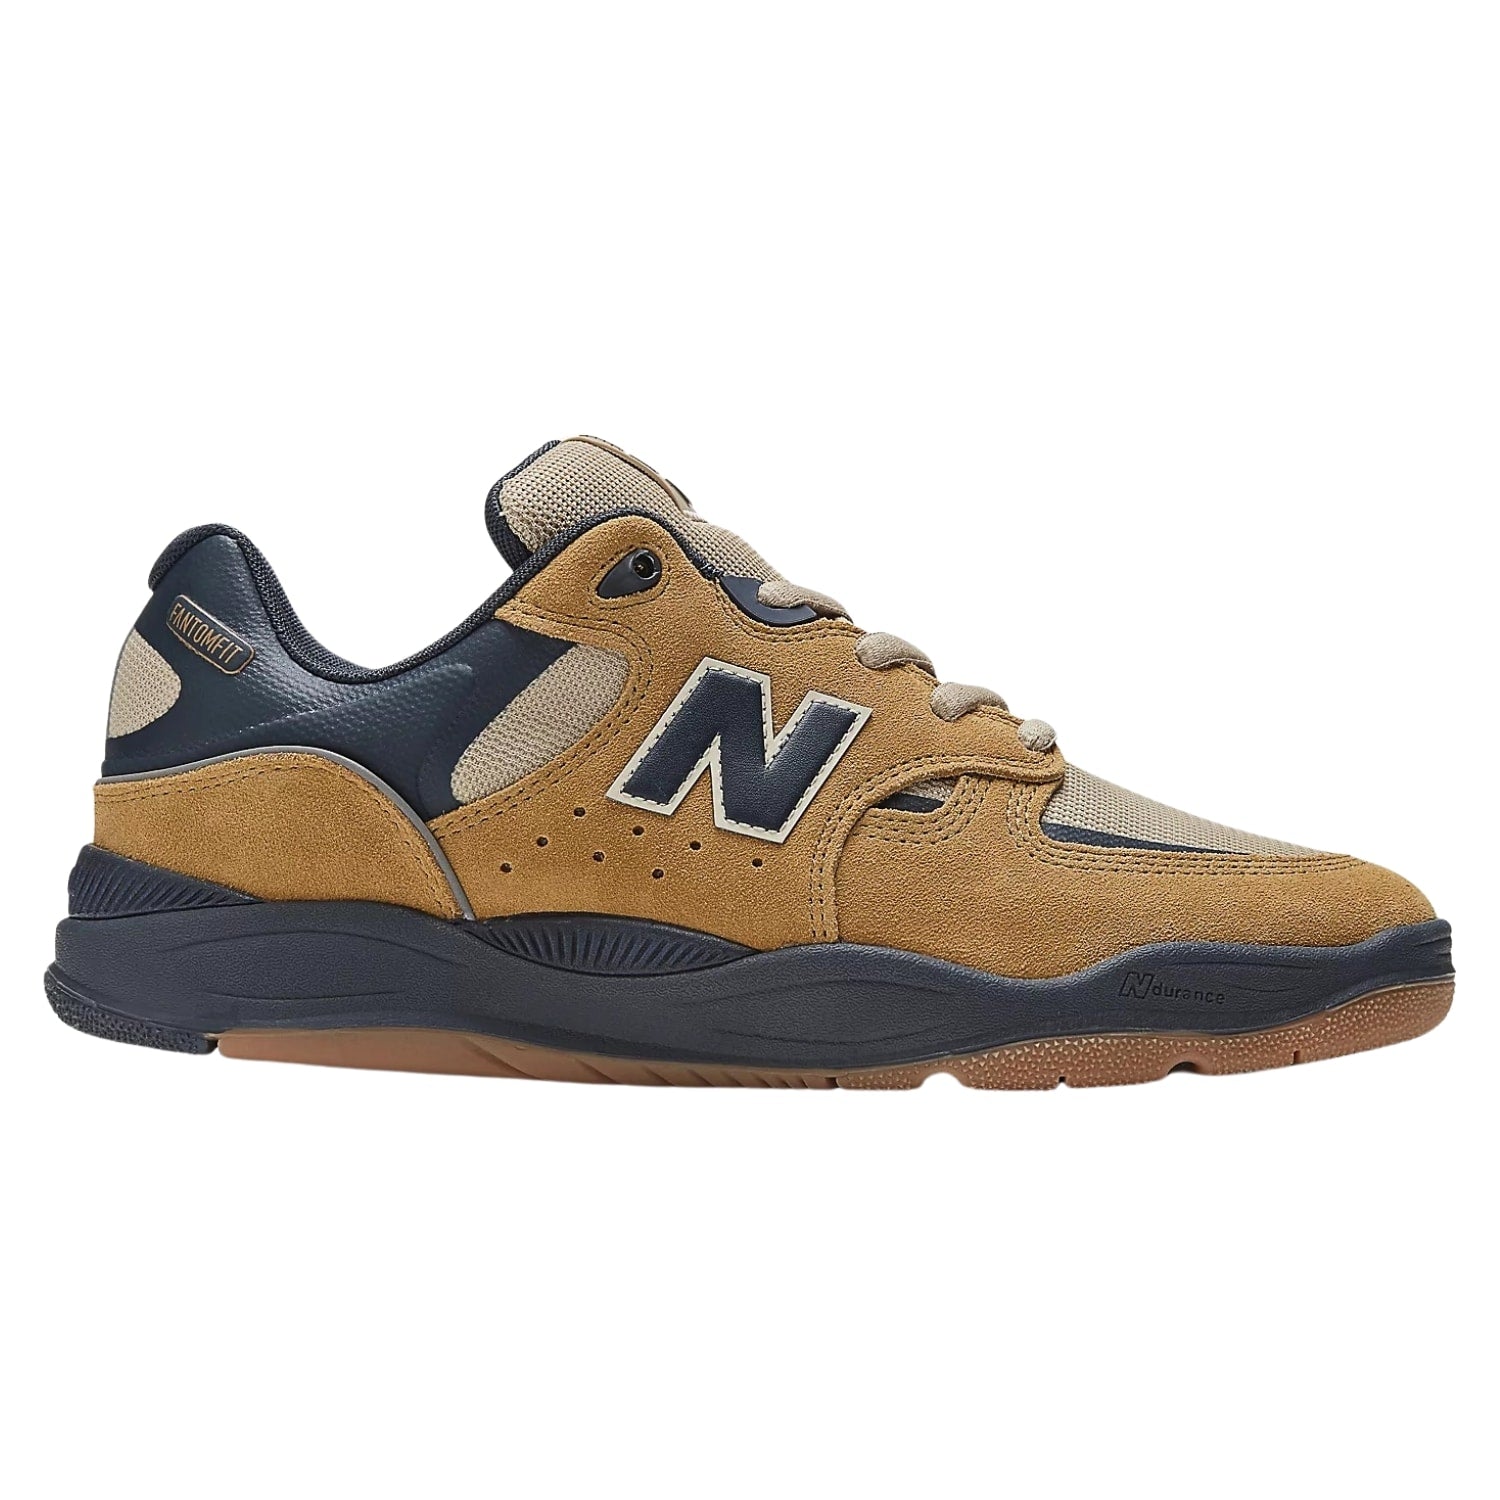 New Balance Numeric Nm1010 Tiago Lemos Skate Shoes - Wheat/Navy - Mens Skate Shoes by New Balance Numeric